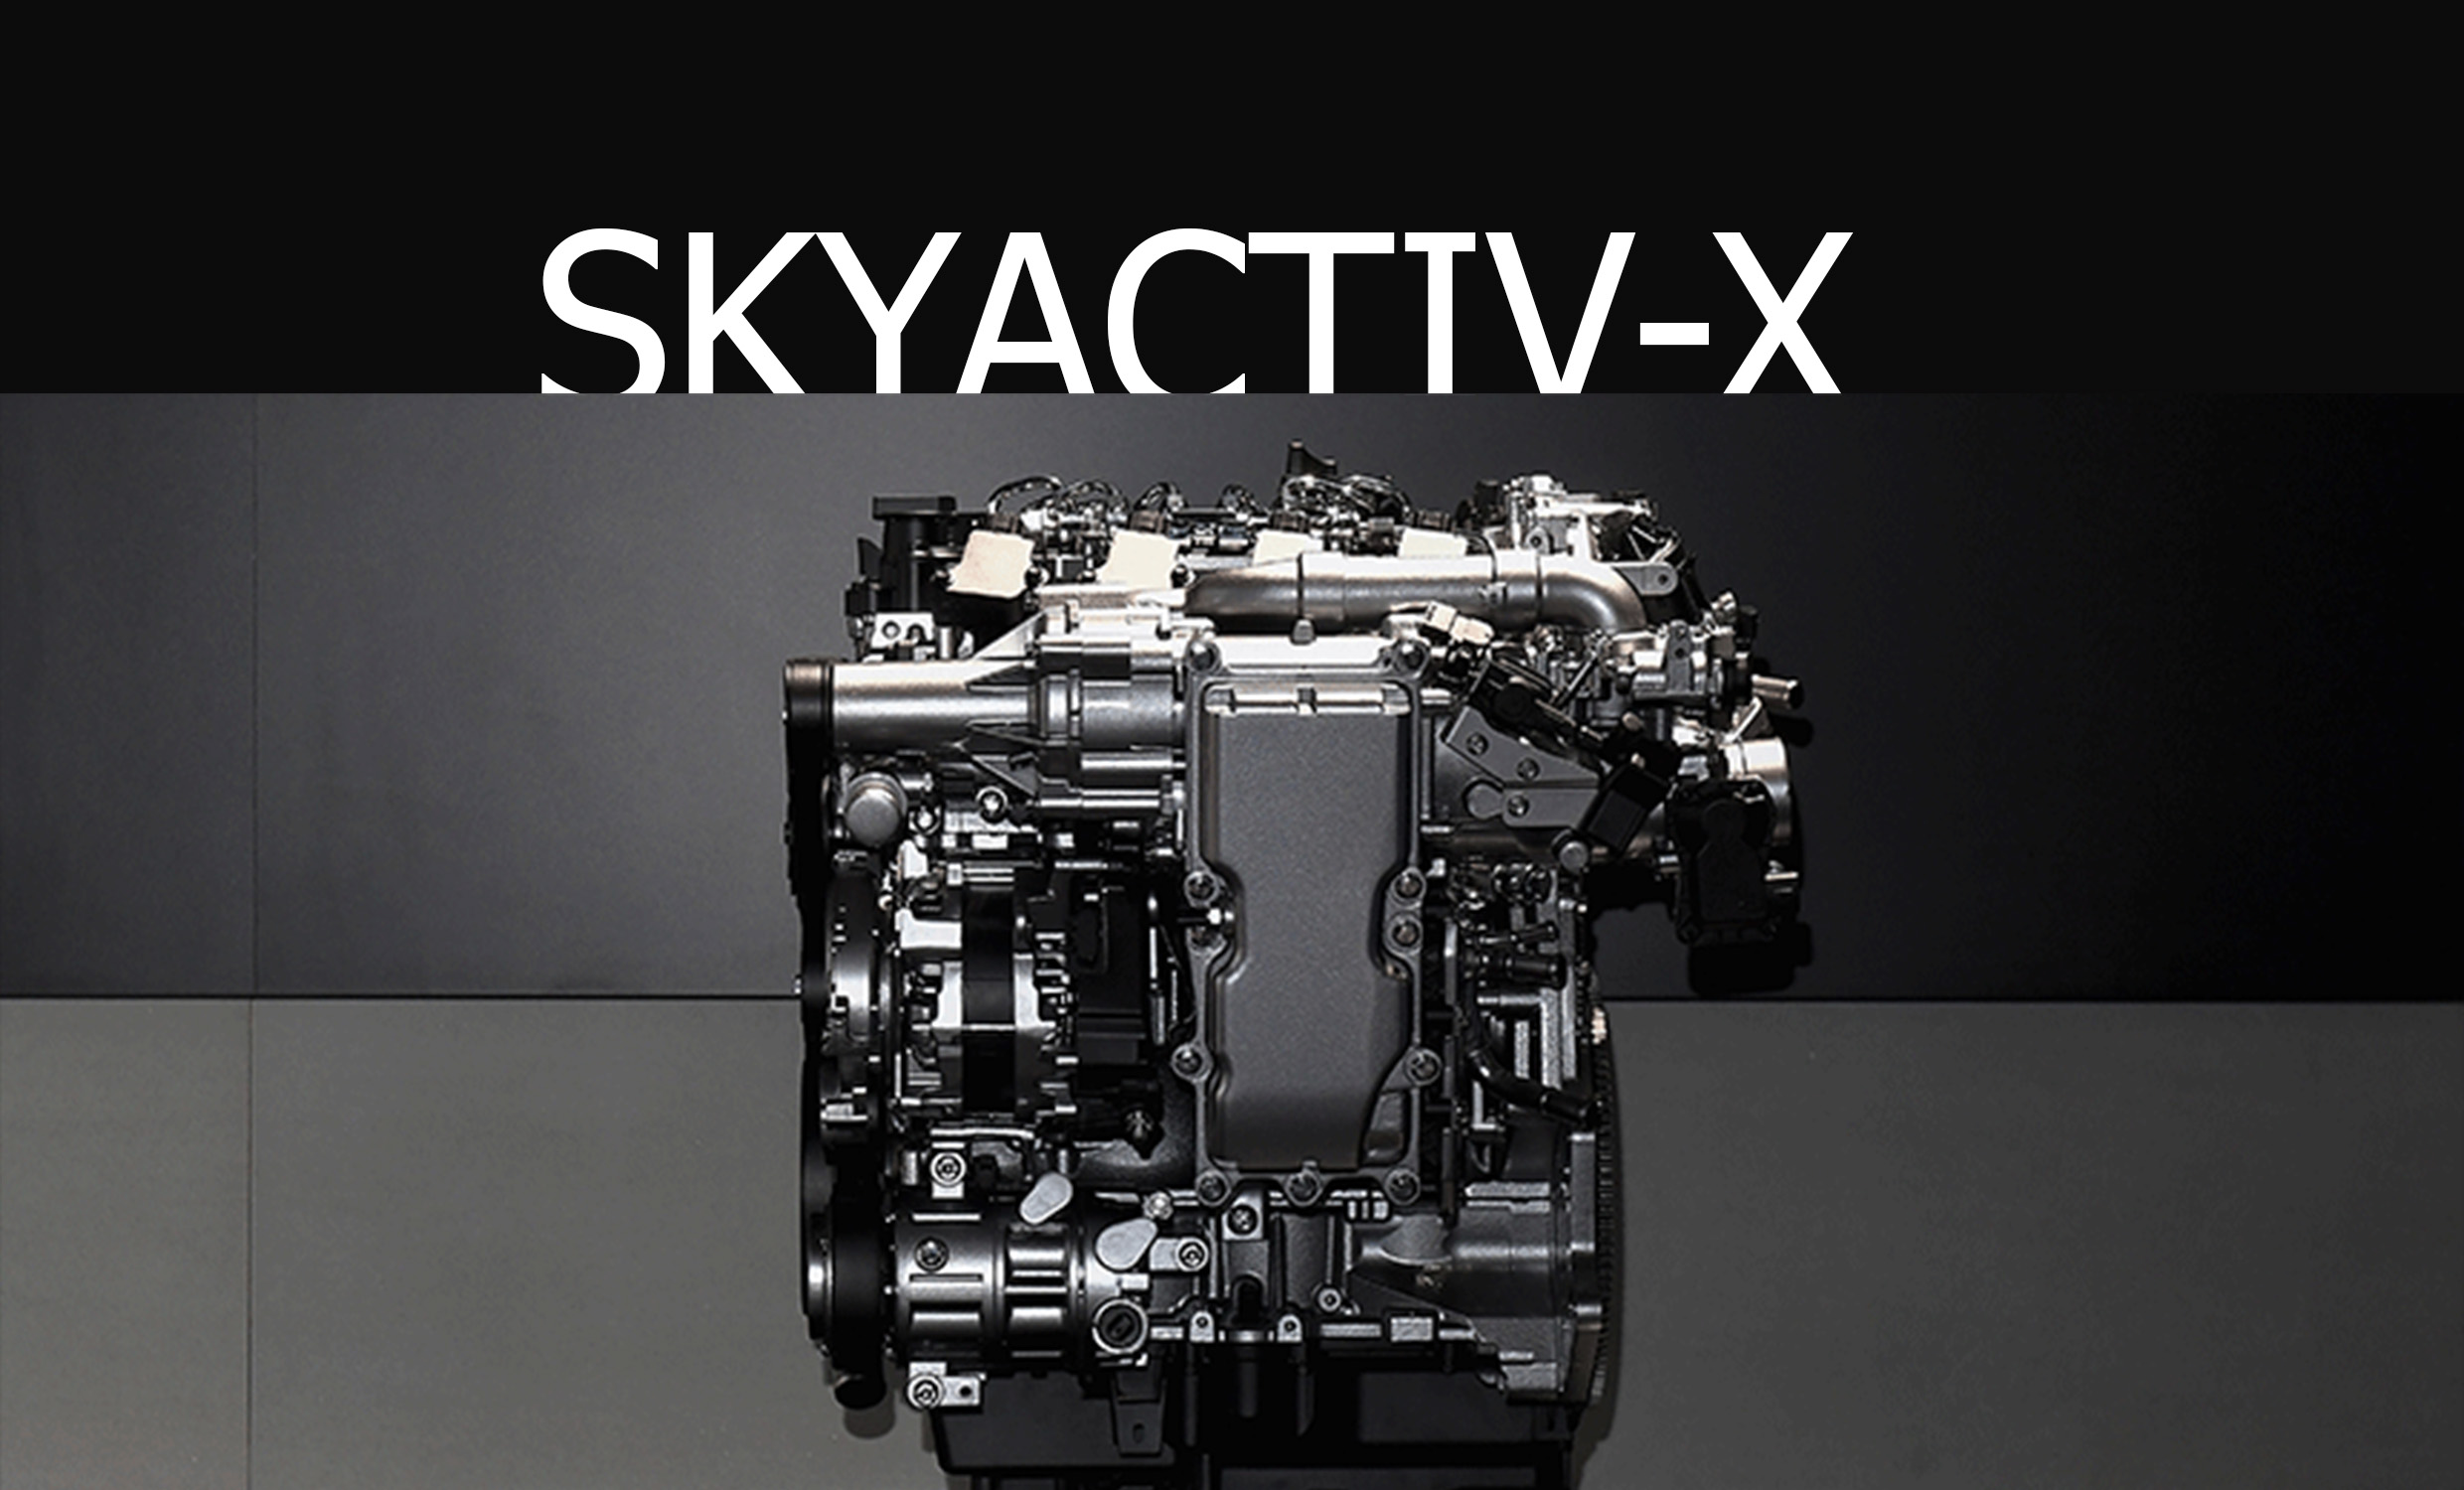 เผยข้อมูลเครื่องยนต์ SKYACTIV-X ให้กำลังสูงสุด 180 แรงม้า